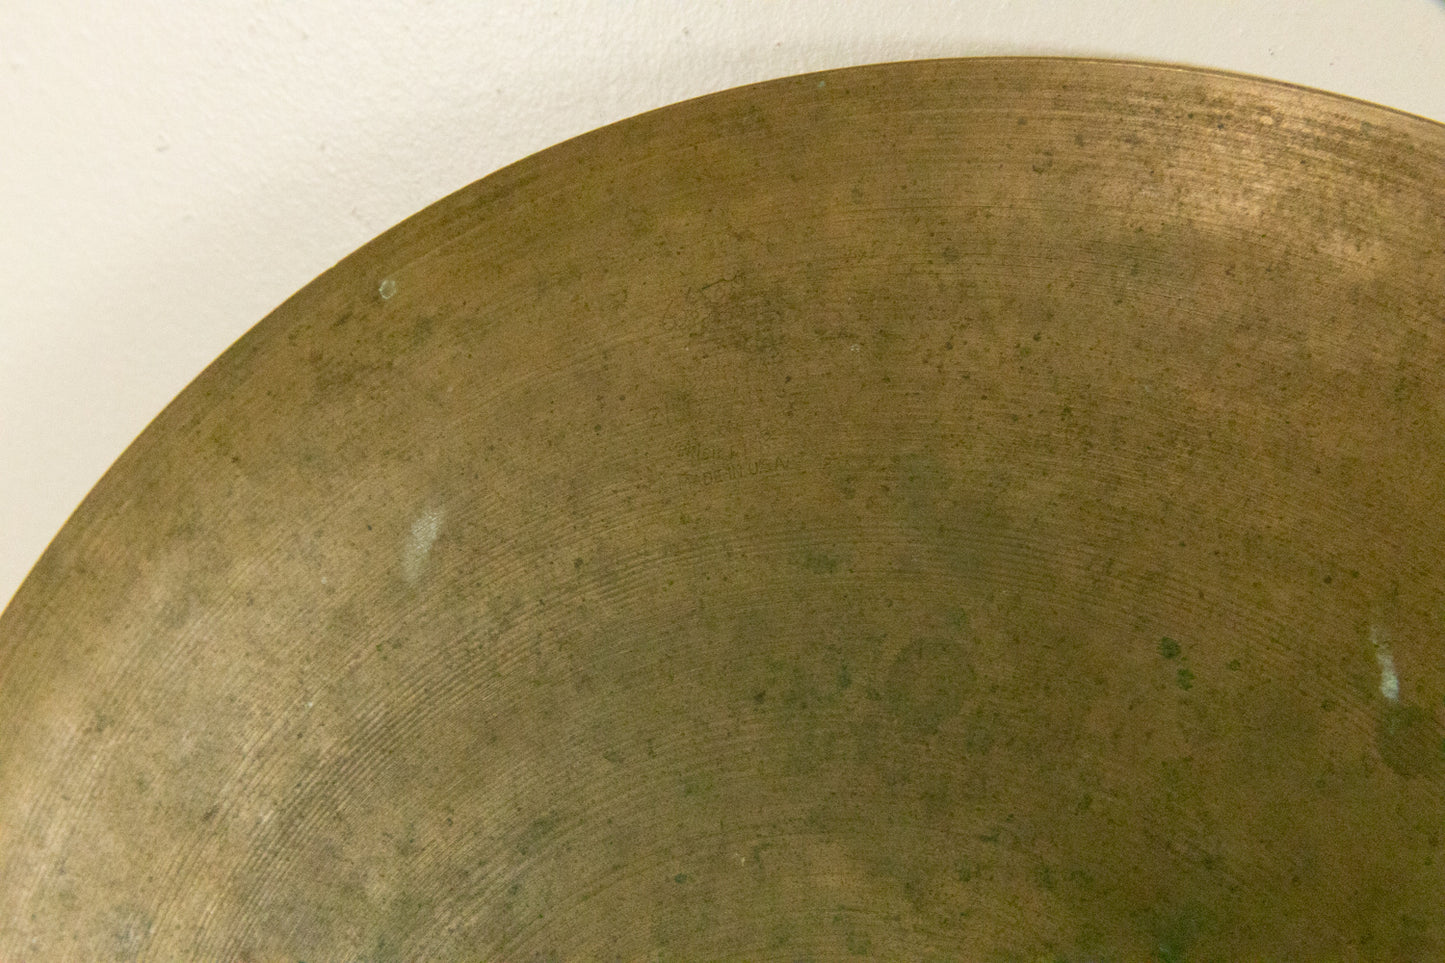 1960s Zildjian A 15" Hi Hat Cymbal 1392g